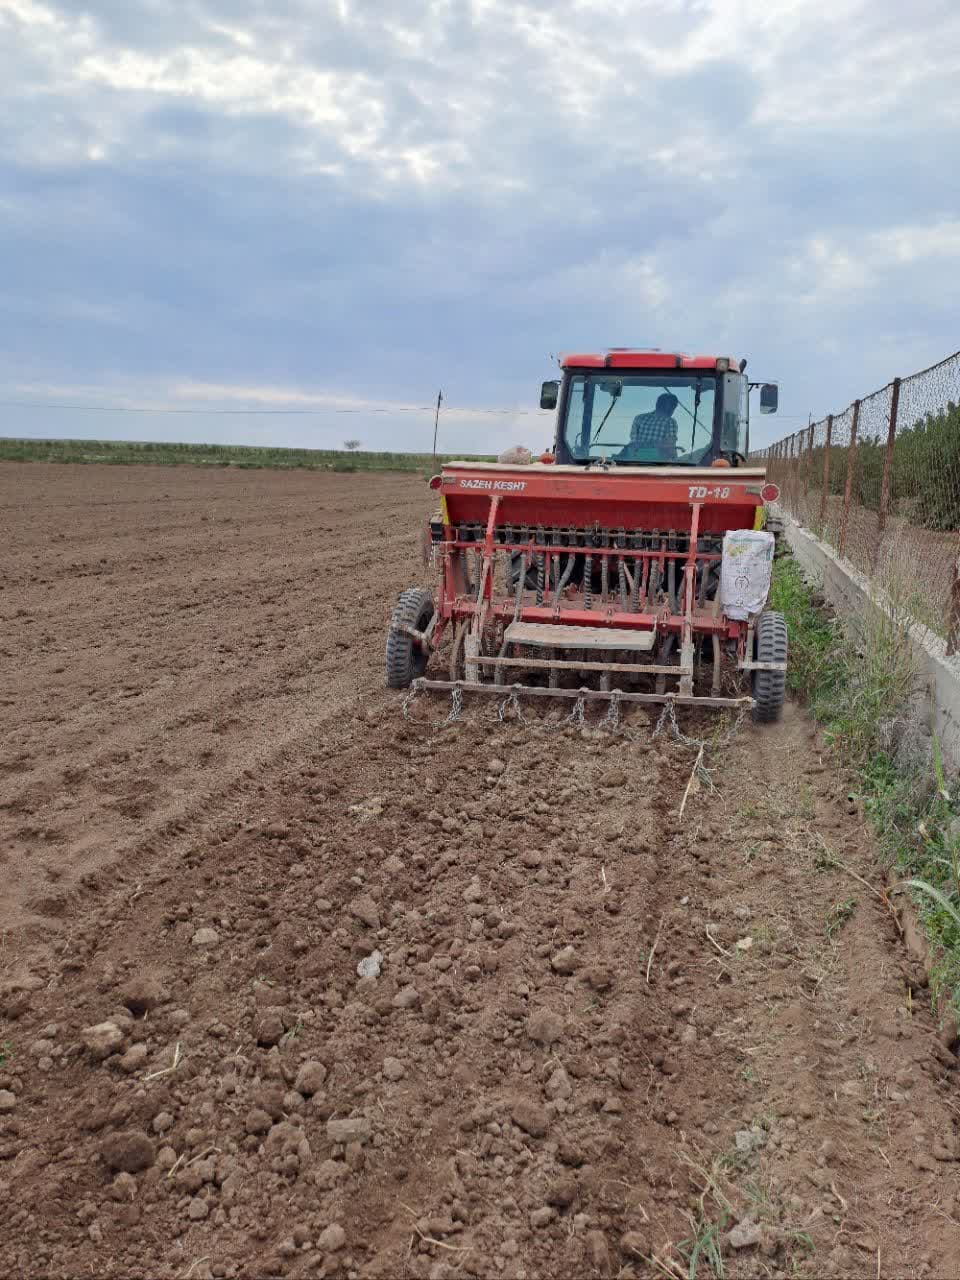 ایجاد اولین مزارع بذری کتان درشهرستان بیله سوار توسط شرکت توسعه کشت دانه های روغنی